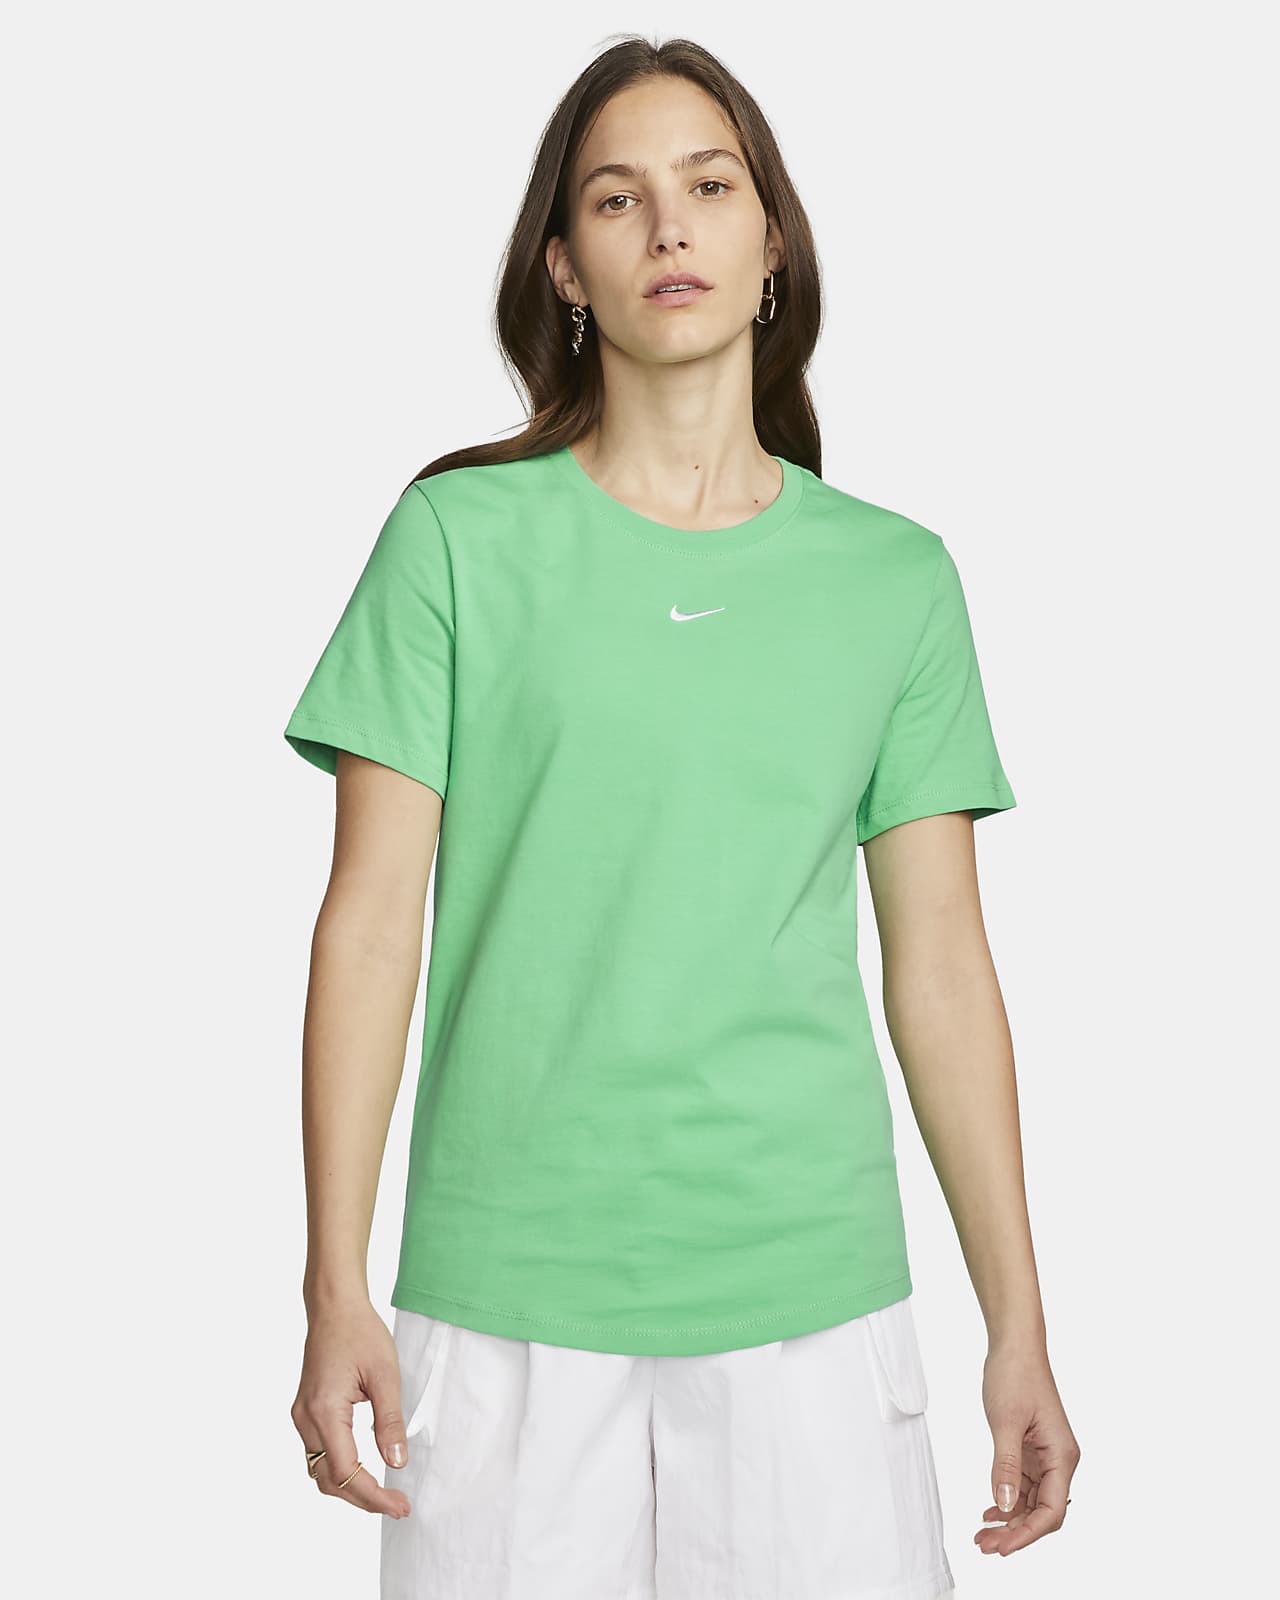 Nike Sportswear Women's Nike.com